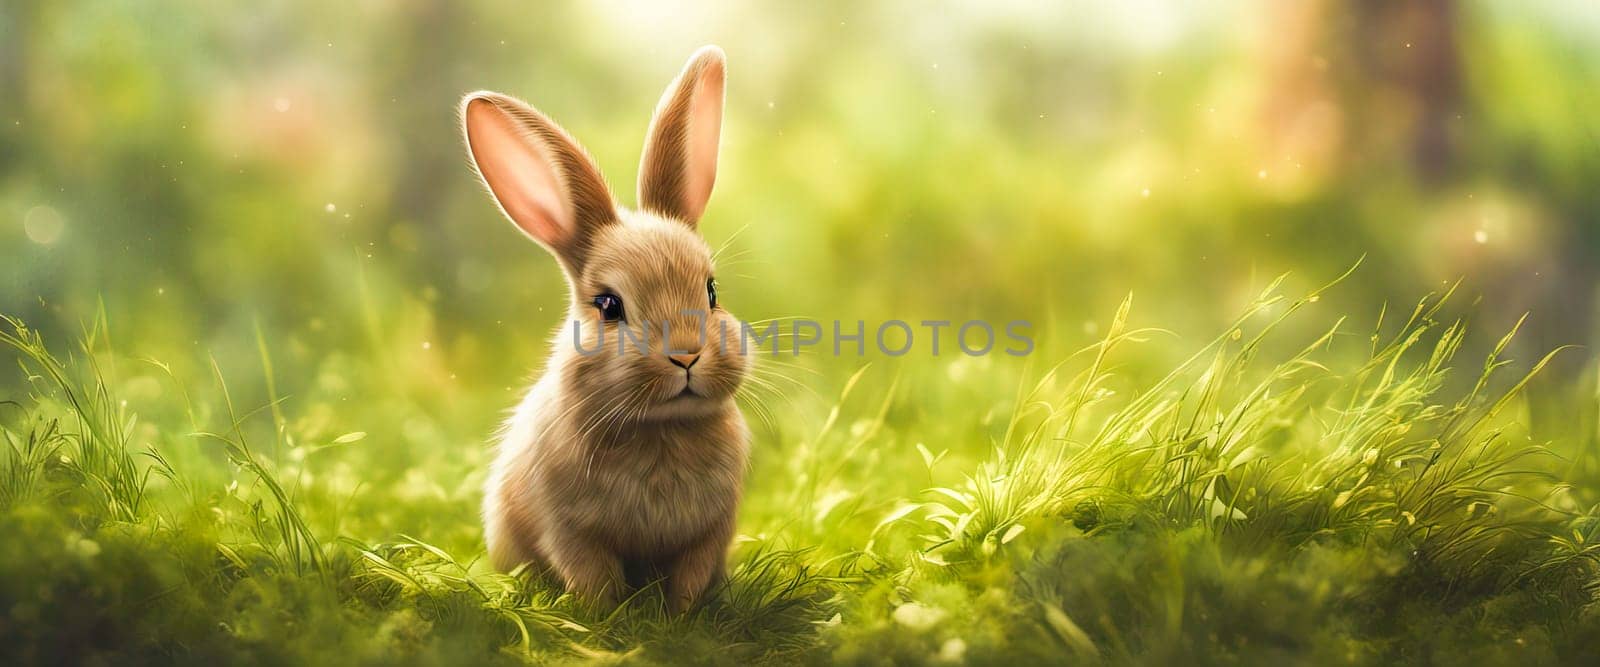 Rabbit. Cute little Easter bunny in meadow. Green grass under sunbeams. Rabbit by EkaterinaPereslavtseva